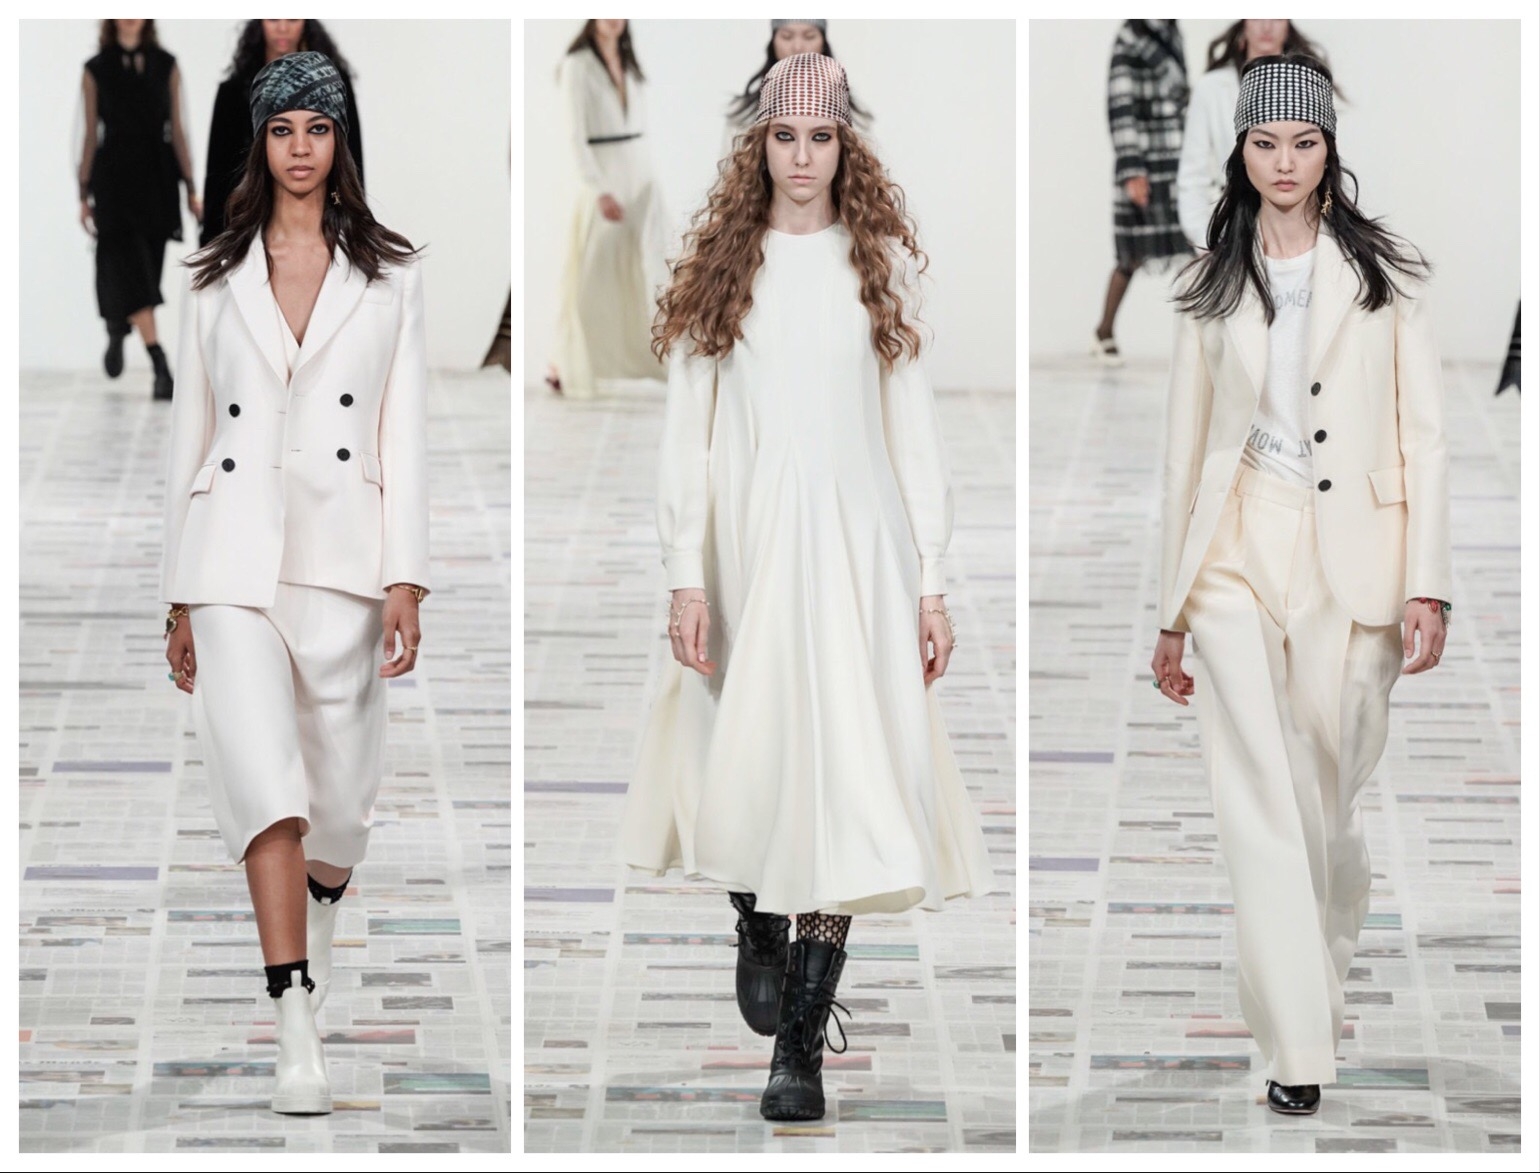 Феминизм в моде: обзор новой коллекции Dior (ФОТО) - фото №9